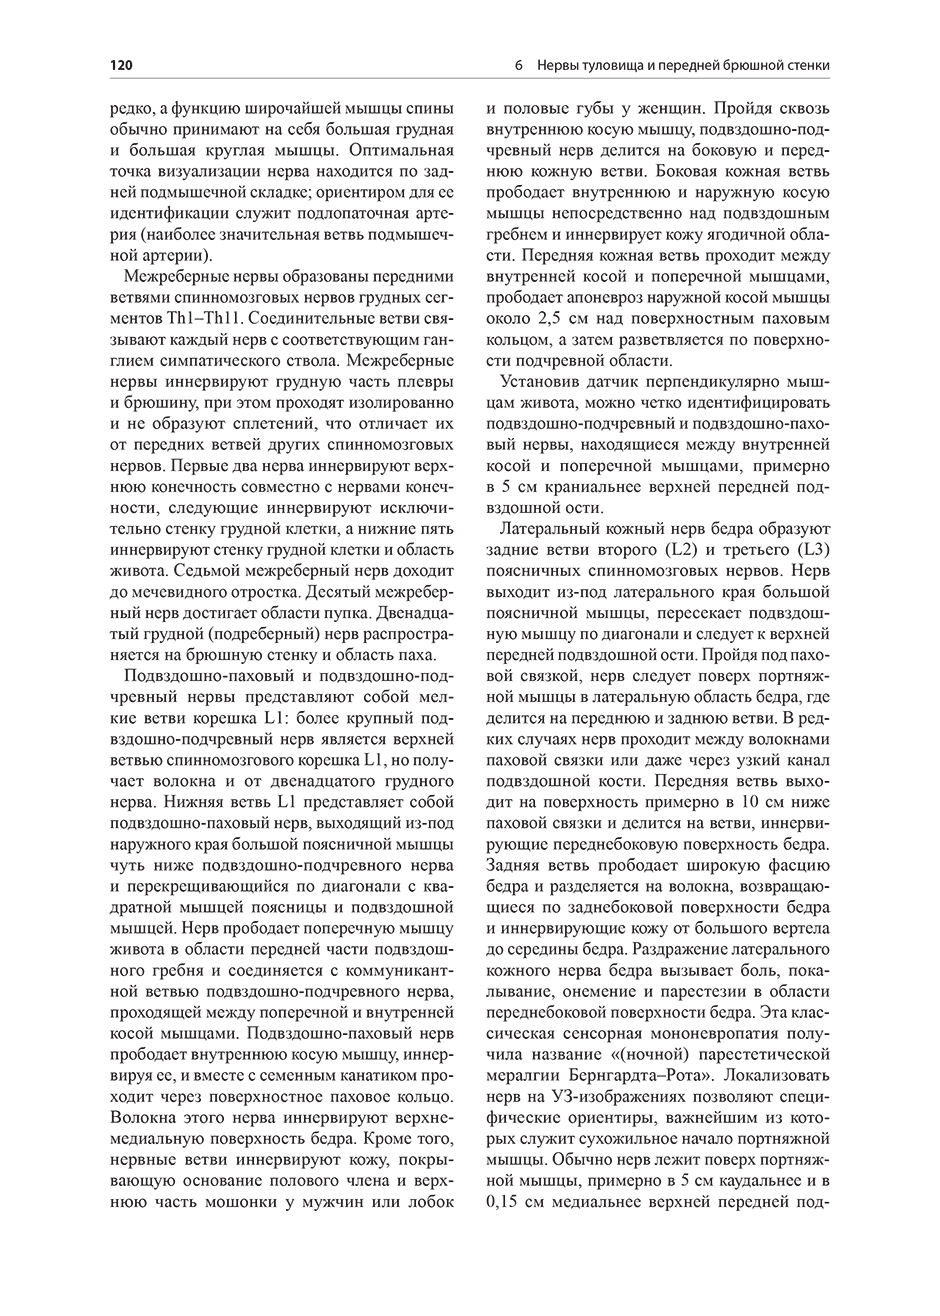 Пример страницы из книги "Атлас по ультразвуковому исследованию в дерматологии: мягкие ткани, кожа, придатки кожи" - Уортсман К.